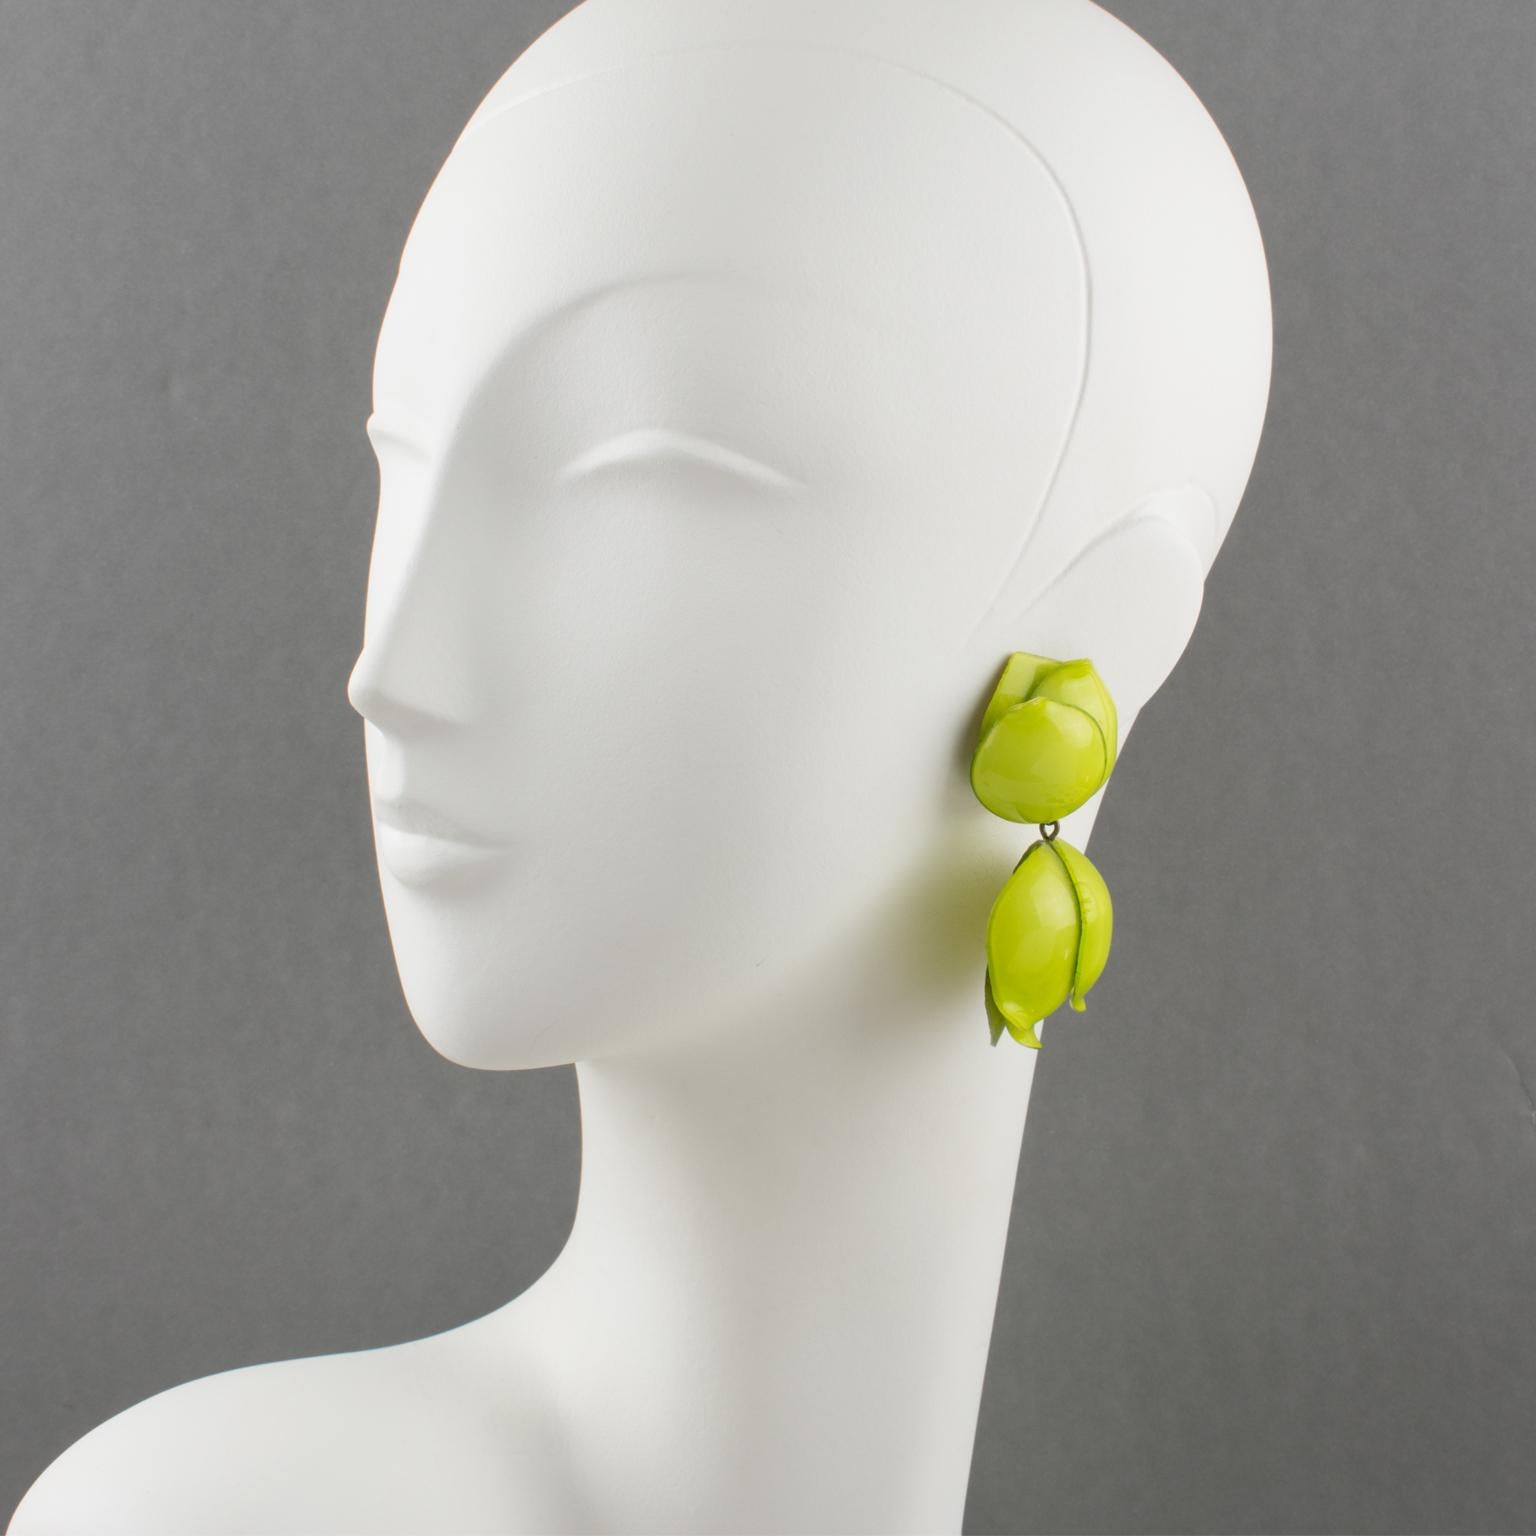 Hübsche französische Designerin Francoise Montague, Pariser Ohrringe aus Harz, entworfen von Cilea Paris. Sie haben eine baumelnde Blumenform, alle geschnitzten und erhabenen Blumen in apfelgrüner Farbe. Wie üblich gibt es keine sichtbare